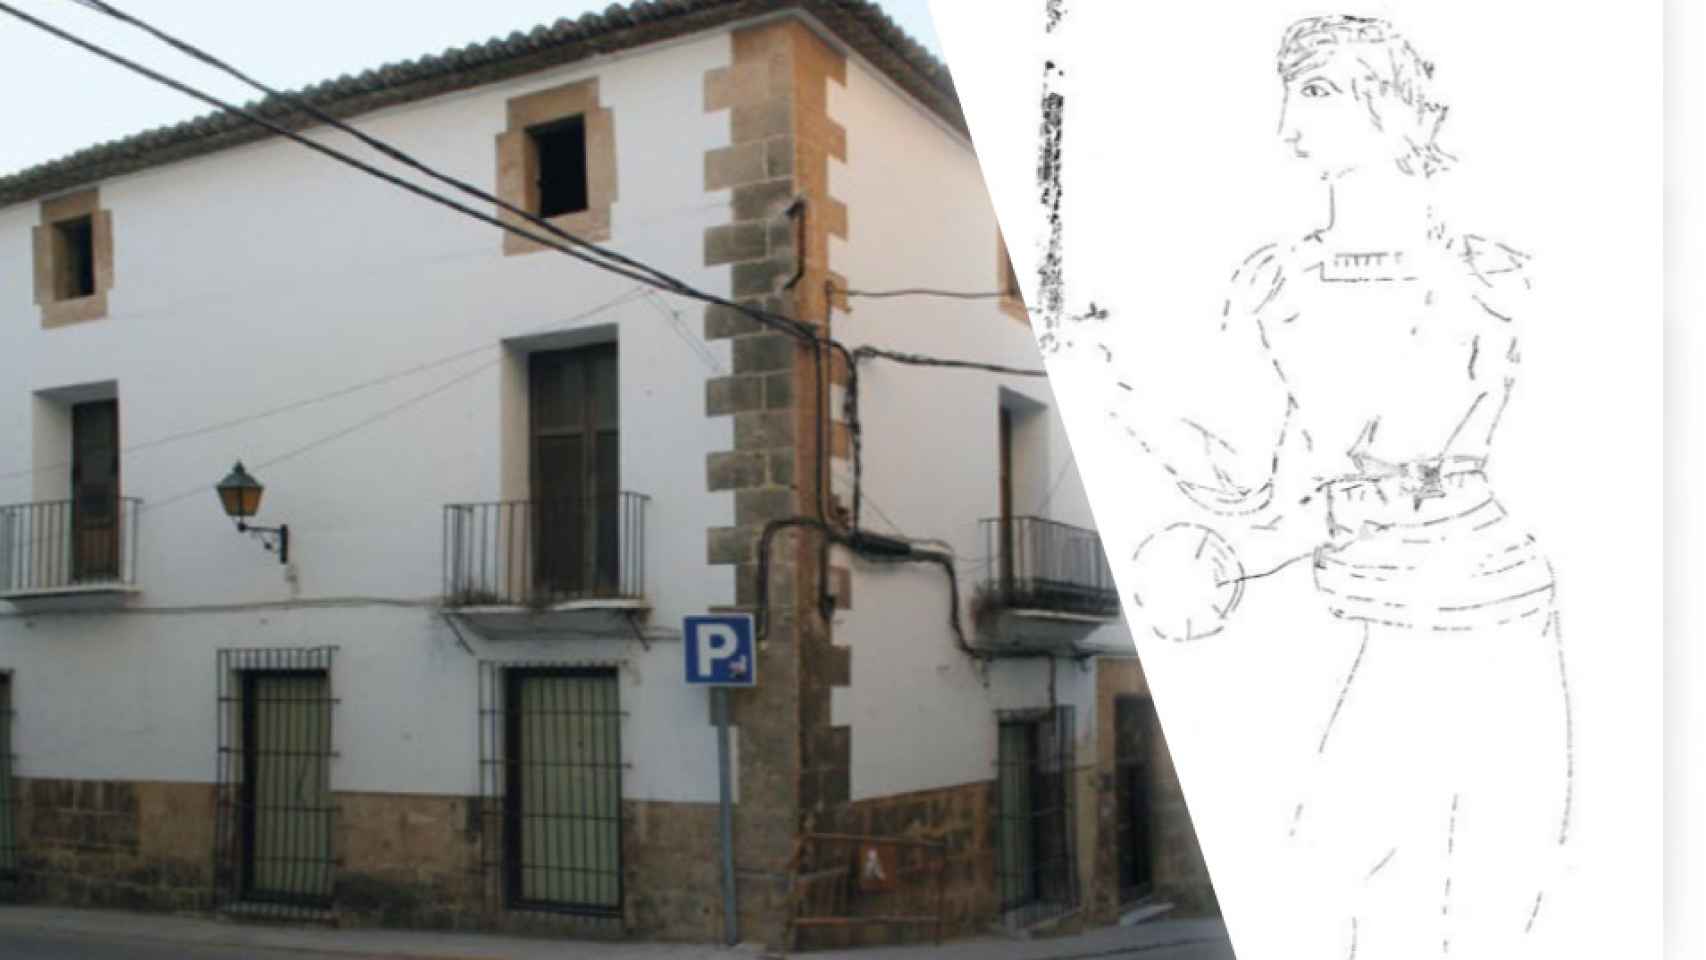 La Casa Candelaria, en su estado actual y  la derecha, el calco del grafiti de un caballero del siglo XV.